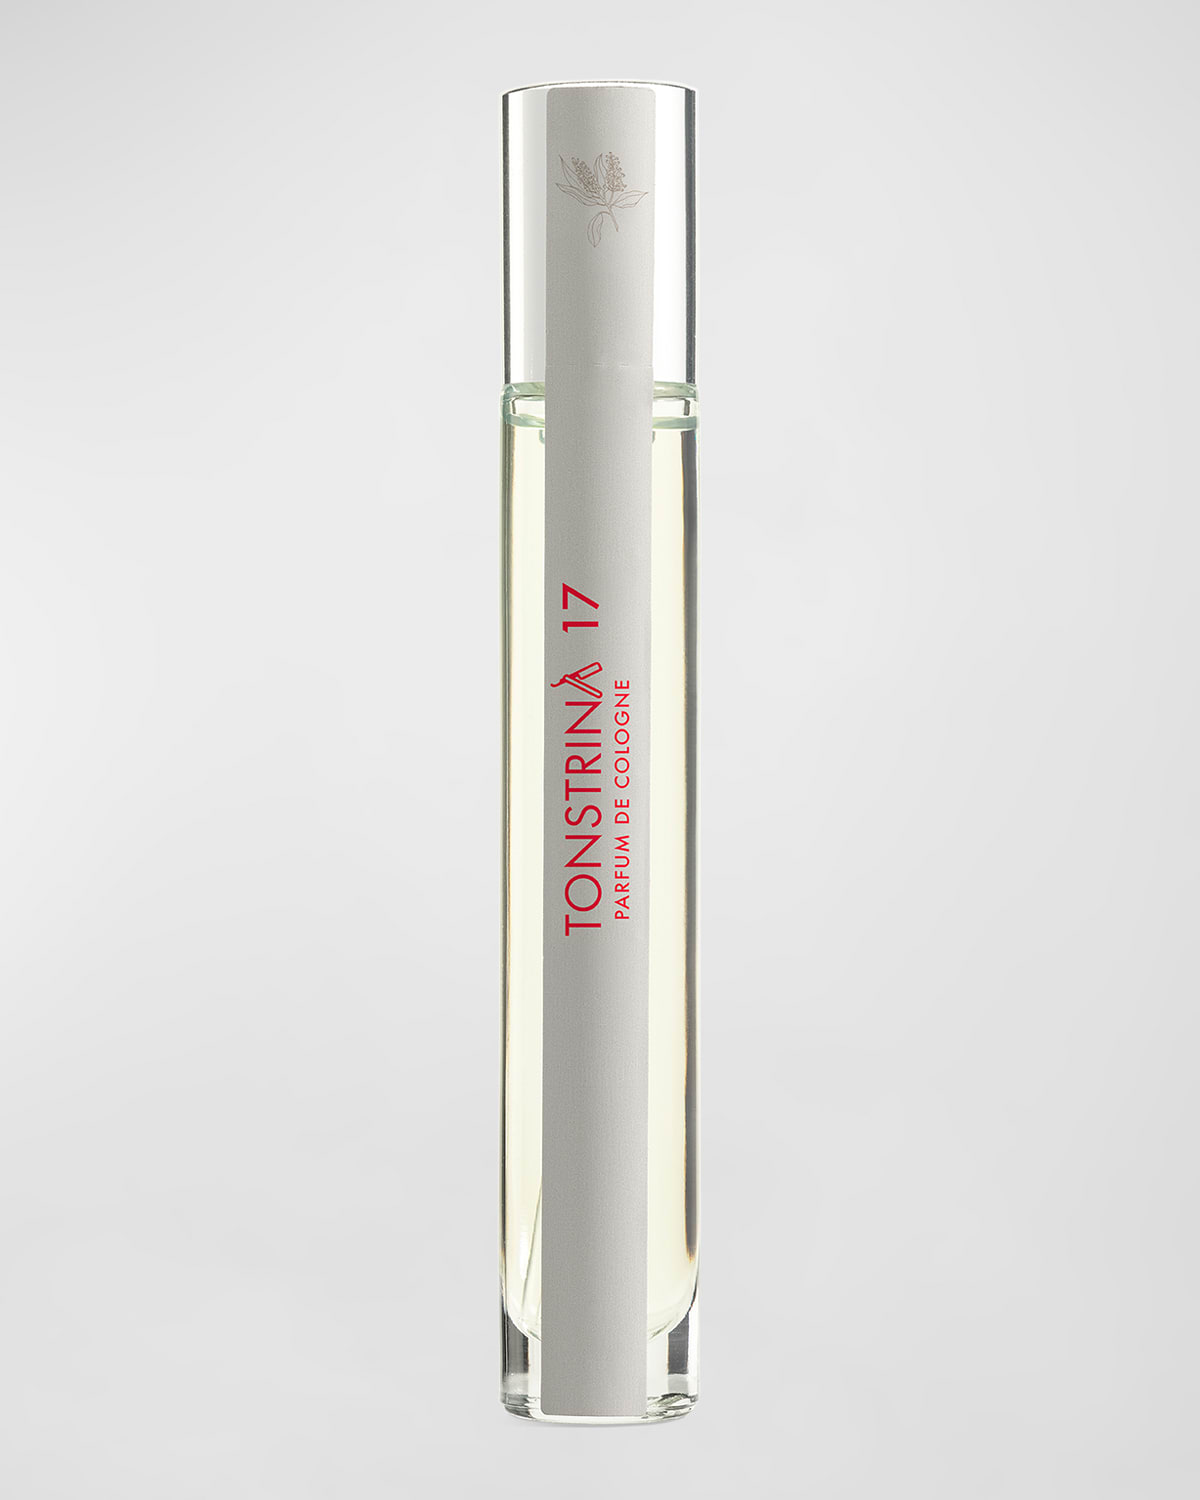 Tonstrina 17 Parfum de Cologne Travel Spray, 0.33 oz.